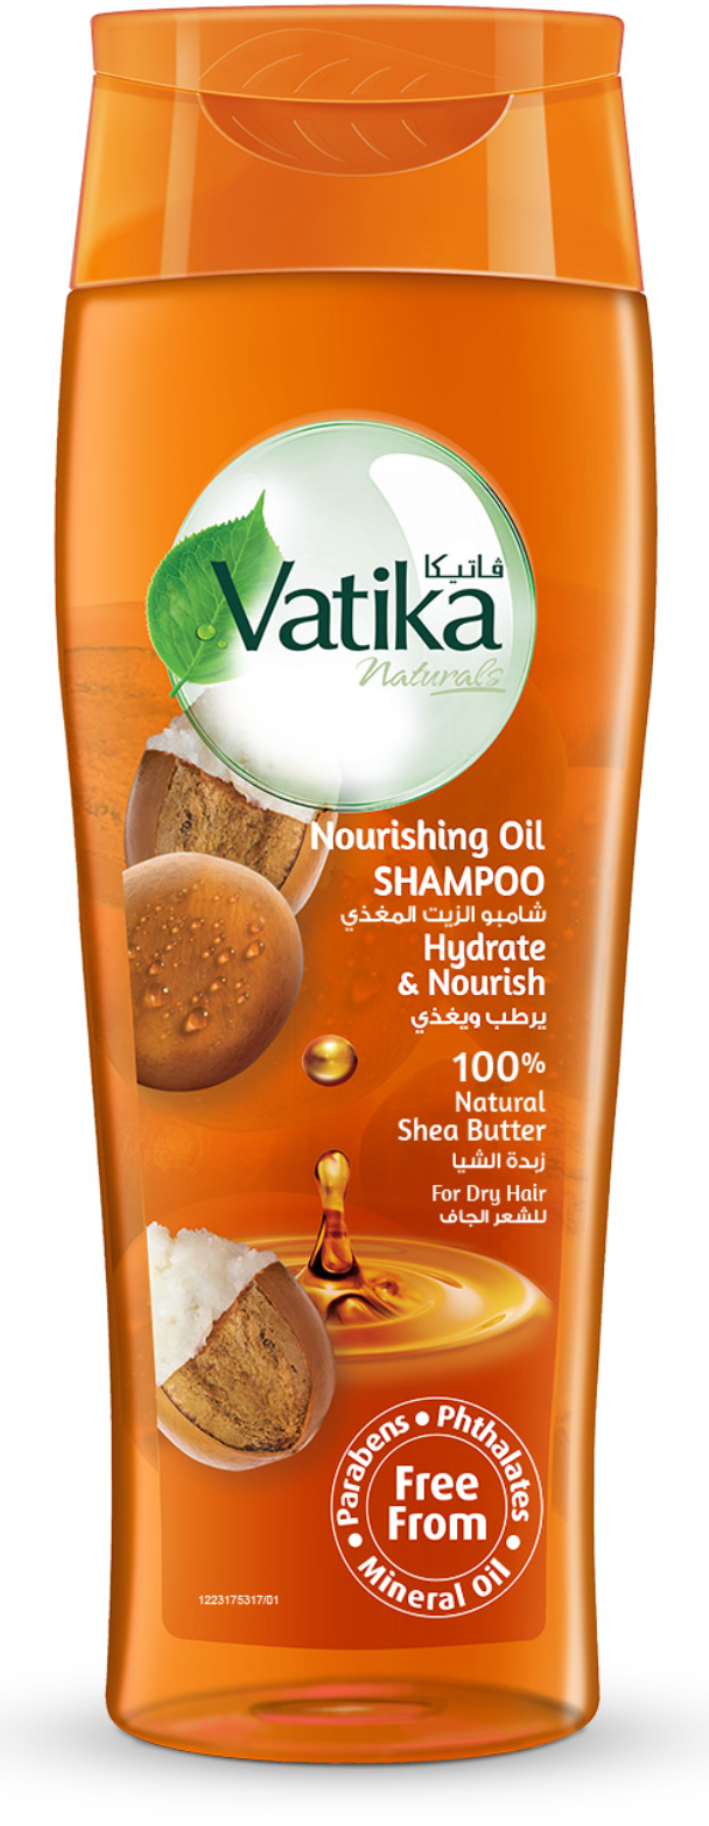 Шампунь для волос Dabur Vatika Nourishing Oil Shea Shampoo с питательным маслом Ши 425 мл питательный шампунь для сухих волос с маслом арганы макадамии shampoo nourishing 2340 300 мл